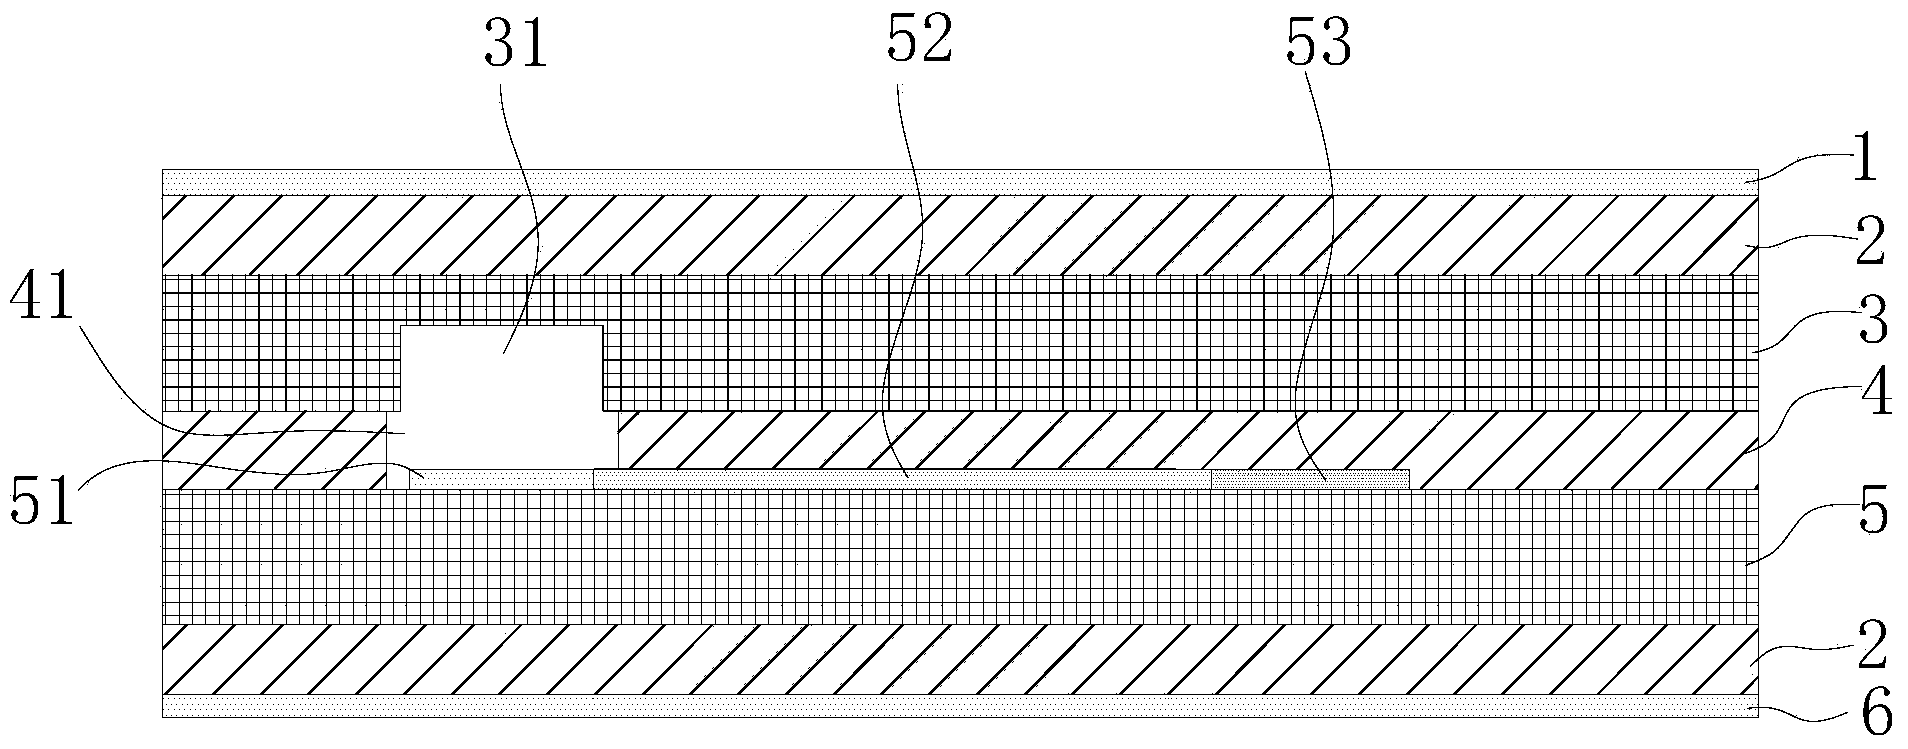 Method of forming deep blind groove in printed circuit board (PCB)